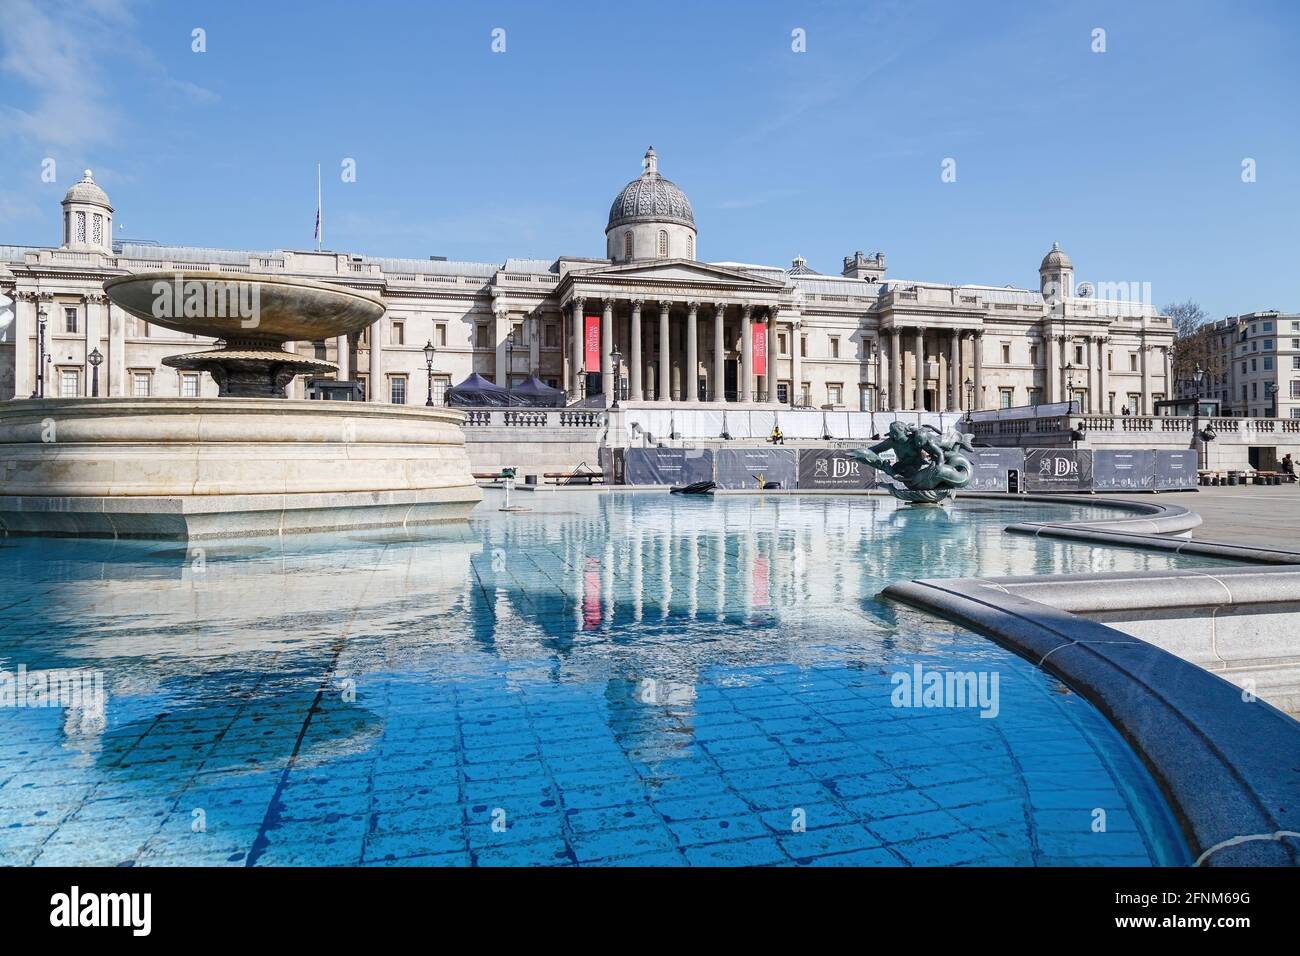 La Galerie nationale se reflète dans les eaux encore bleues de l'une des fontaines de Trafalgar Square, qui remplit l'image au premier plan. Banque D'Images